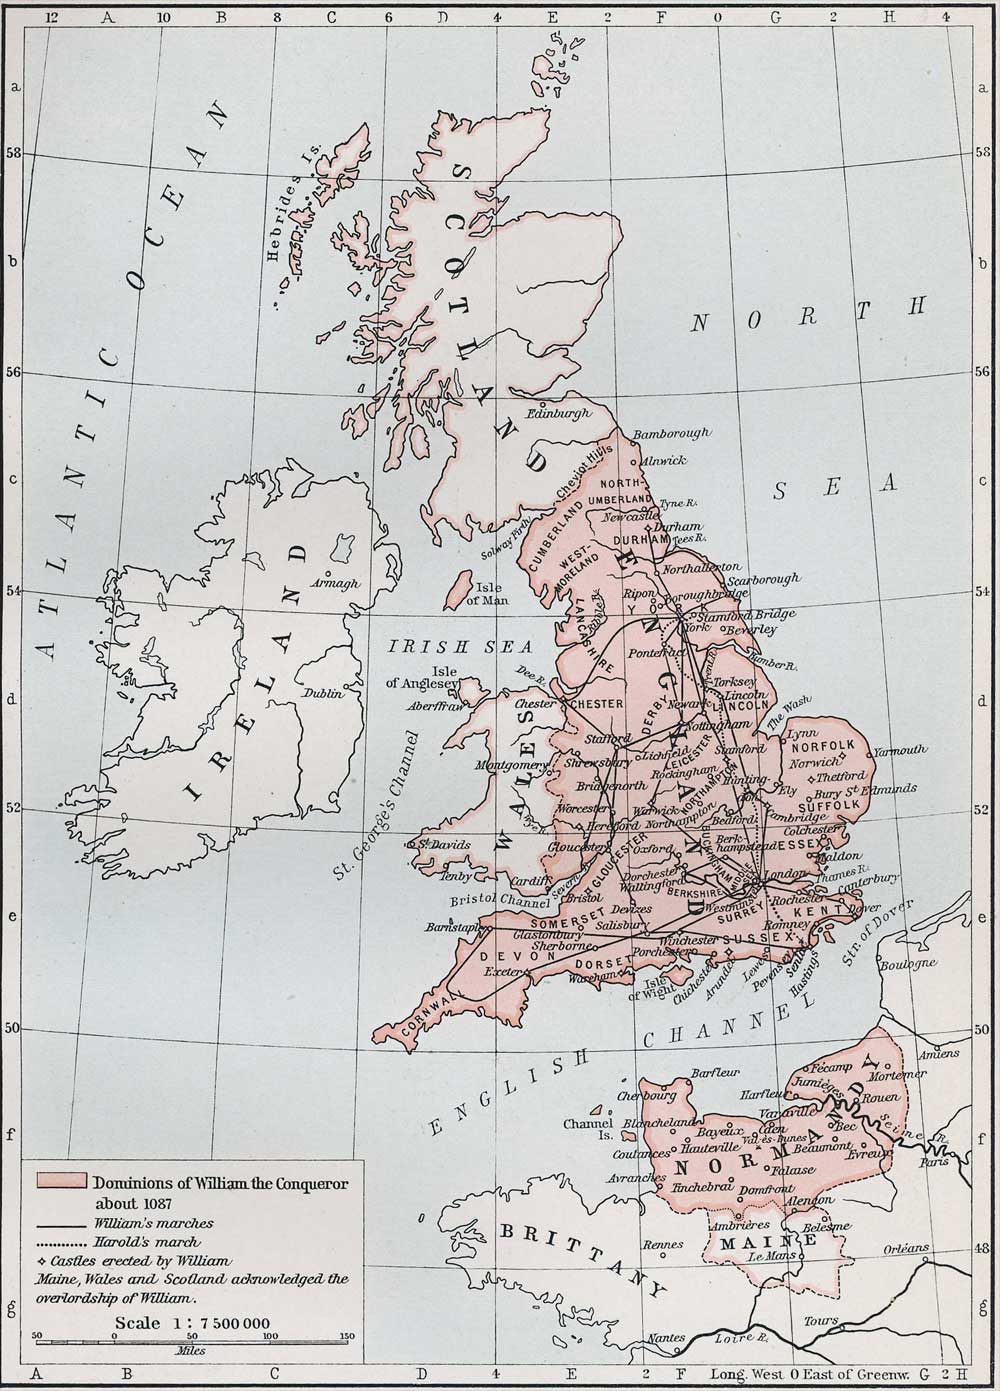 Dominions of William the Conqueror